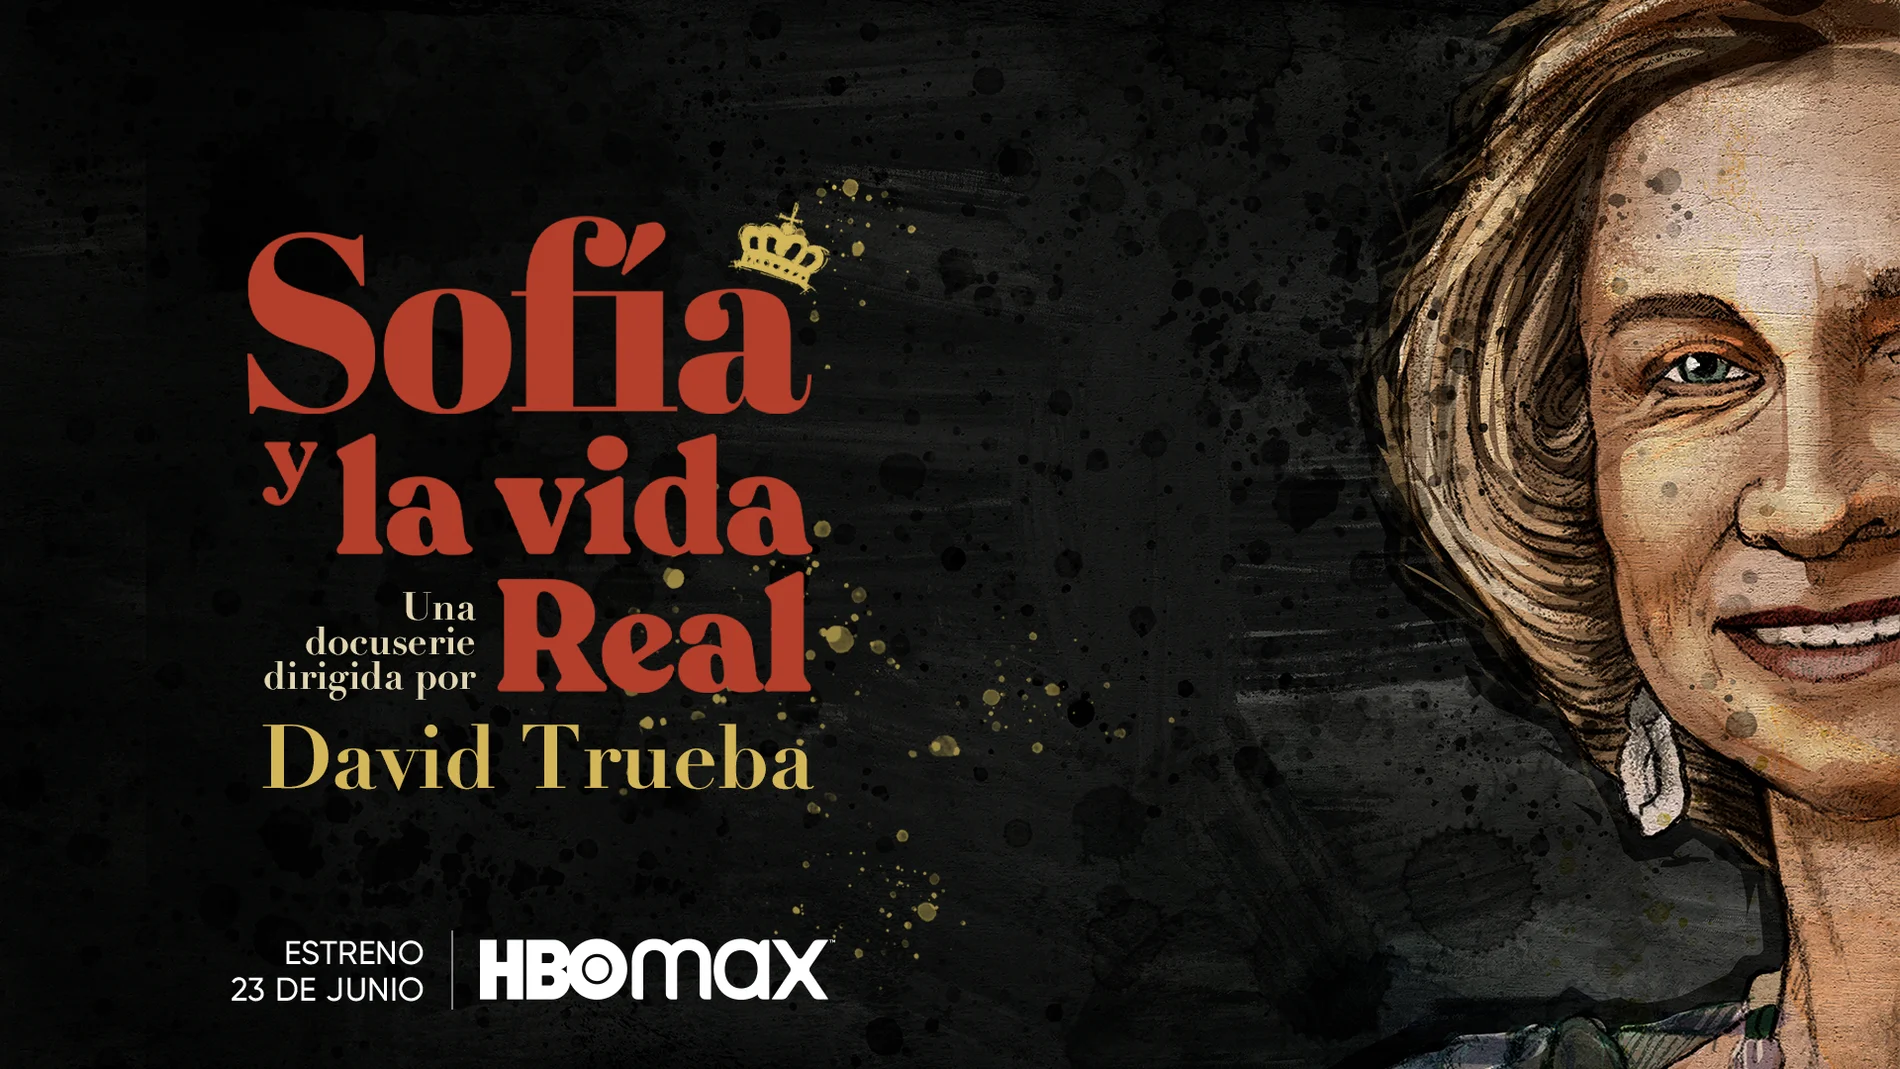 HBO Max estrena el 23 de junio la docuserie &#39;Sofía y la vida Real&#39; dirigida por David Trueba.